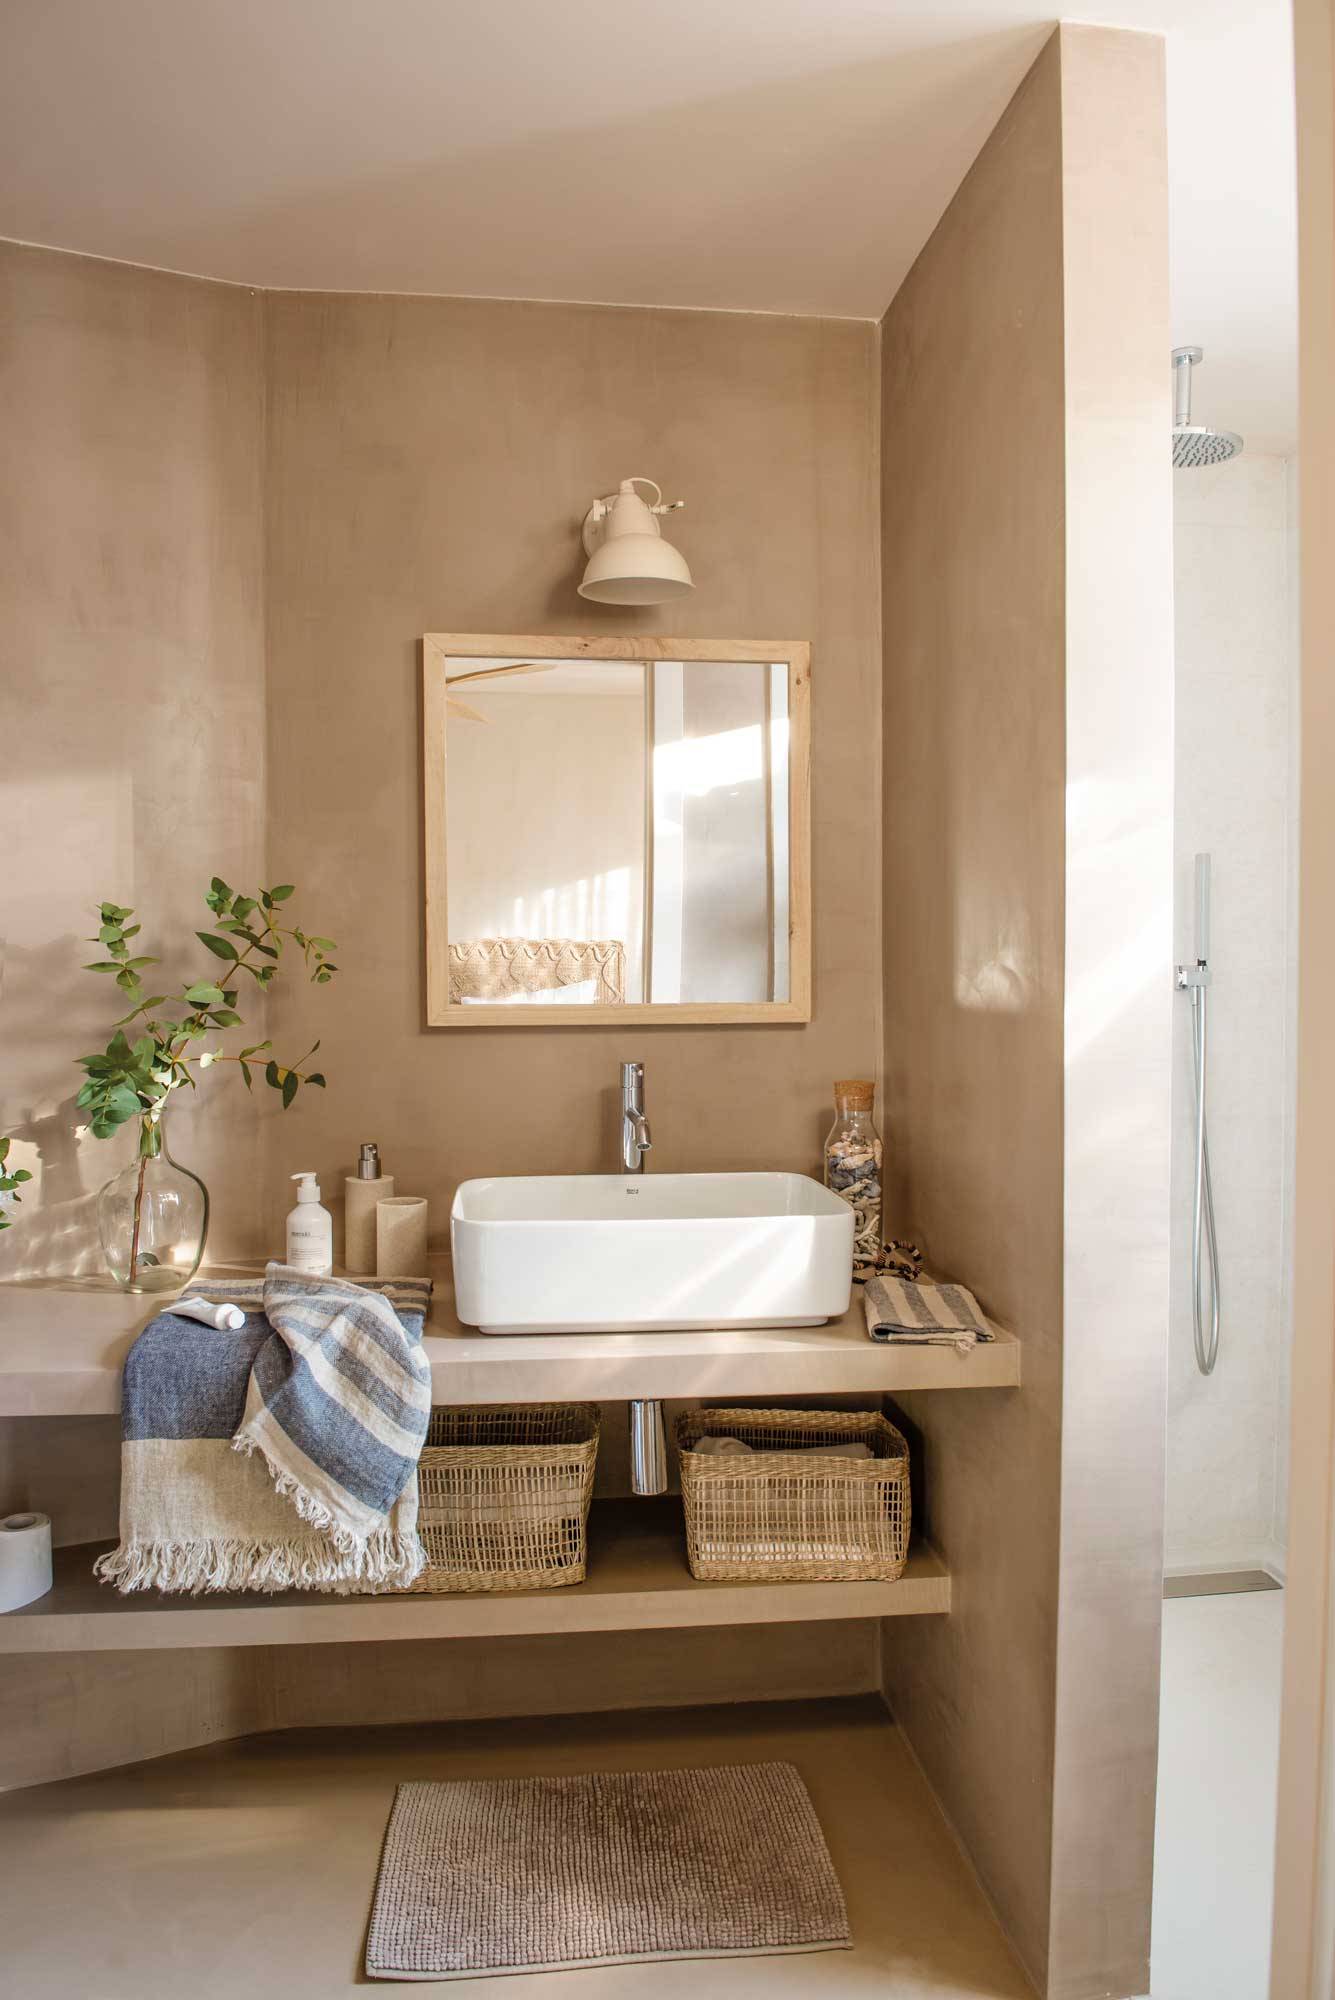 Baño pequeño en tonos neutros con un armario bajolavabo, lámpara de aplique, revestimiento de microcemento y cestas de fibras naturales. 